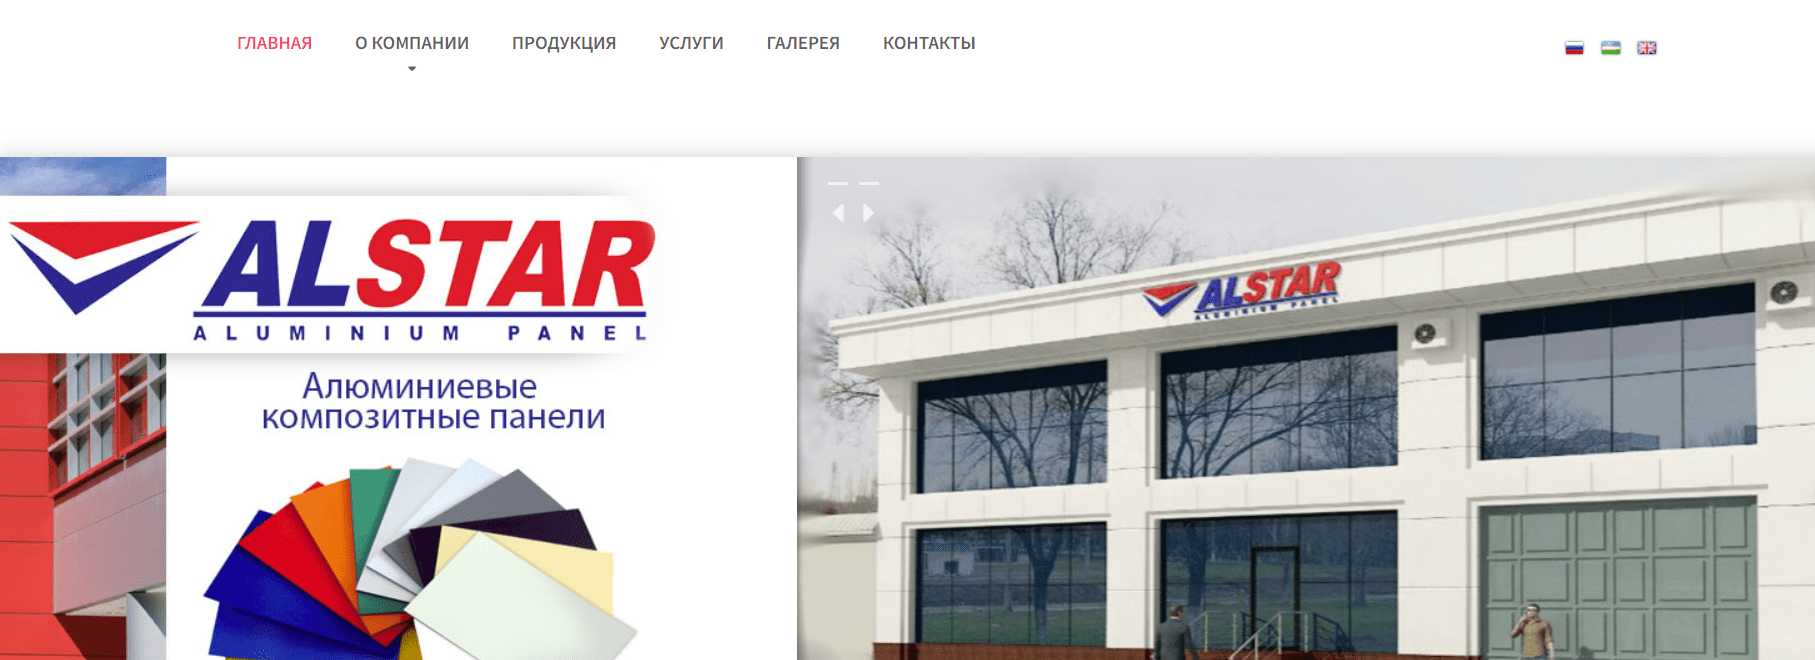 Alstar.uz - официальный сайт